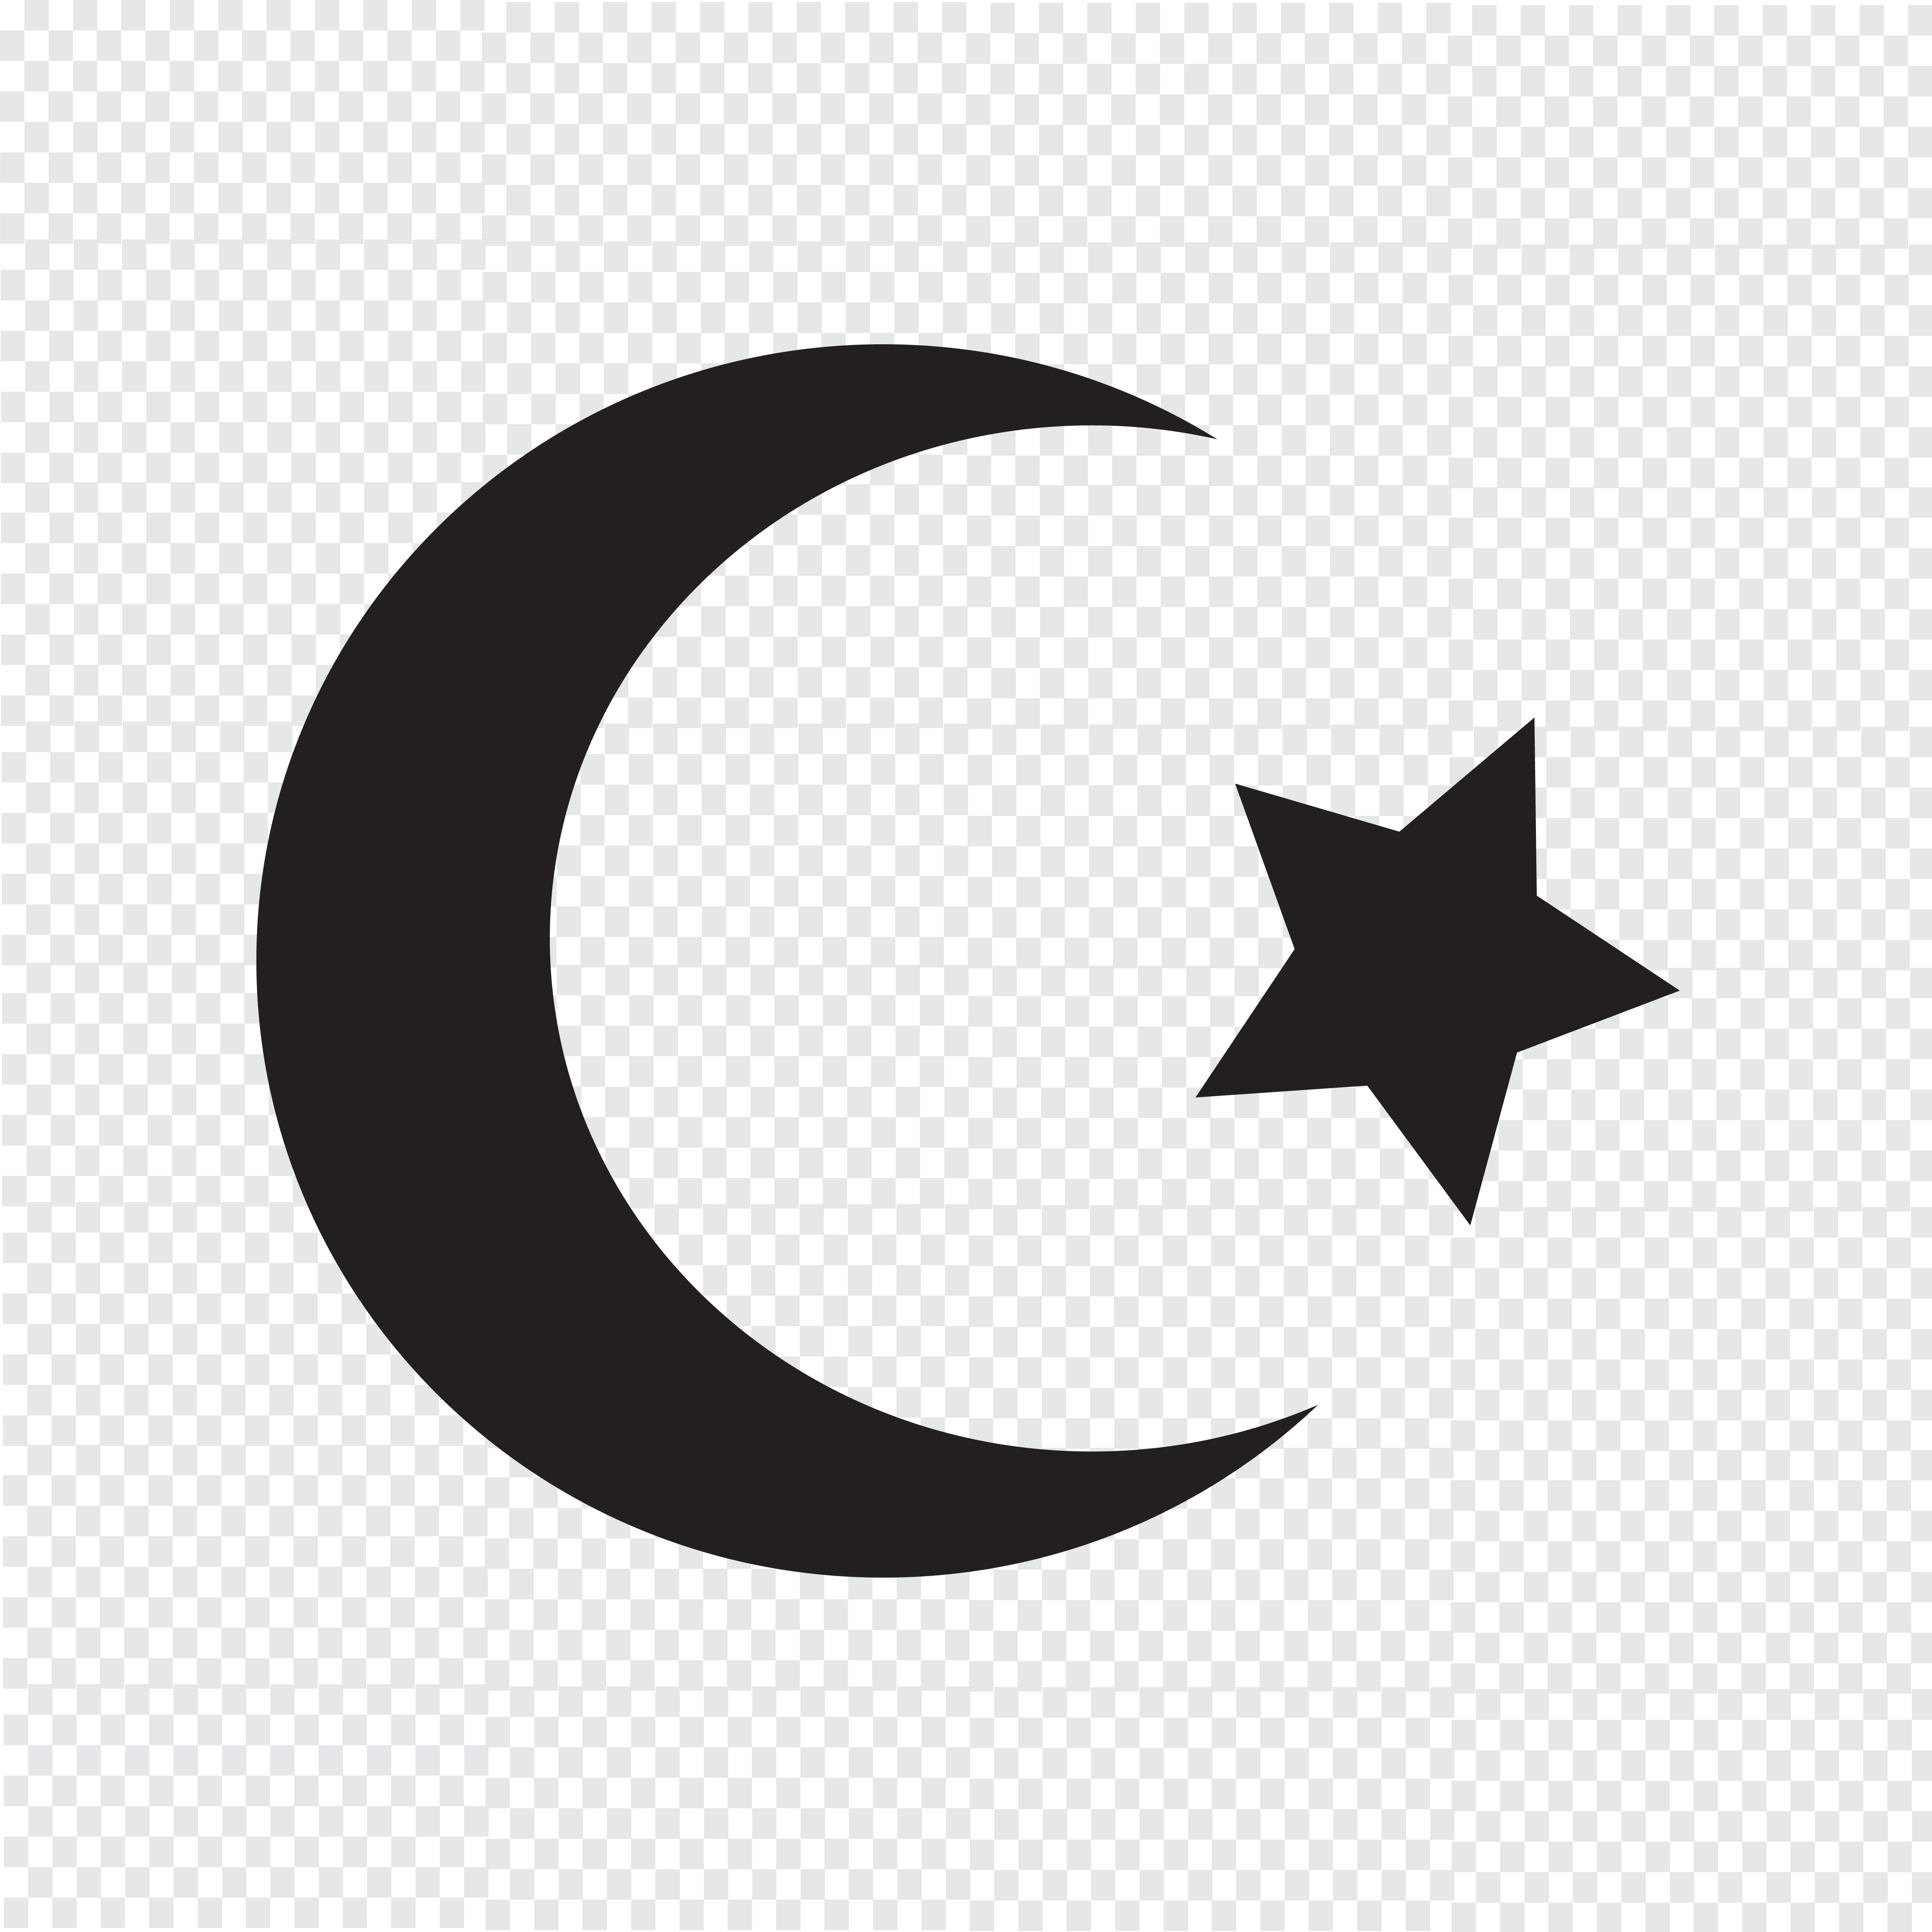 Symbol Of Islam Religion